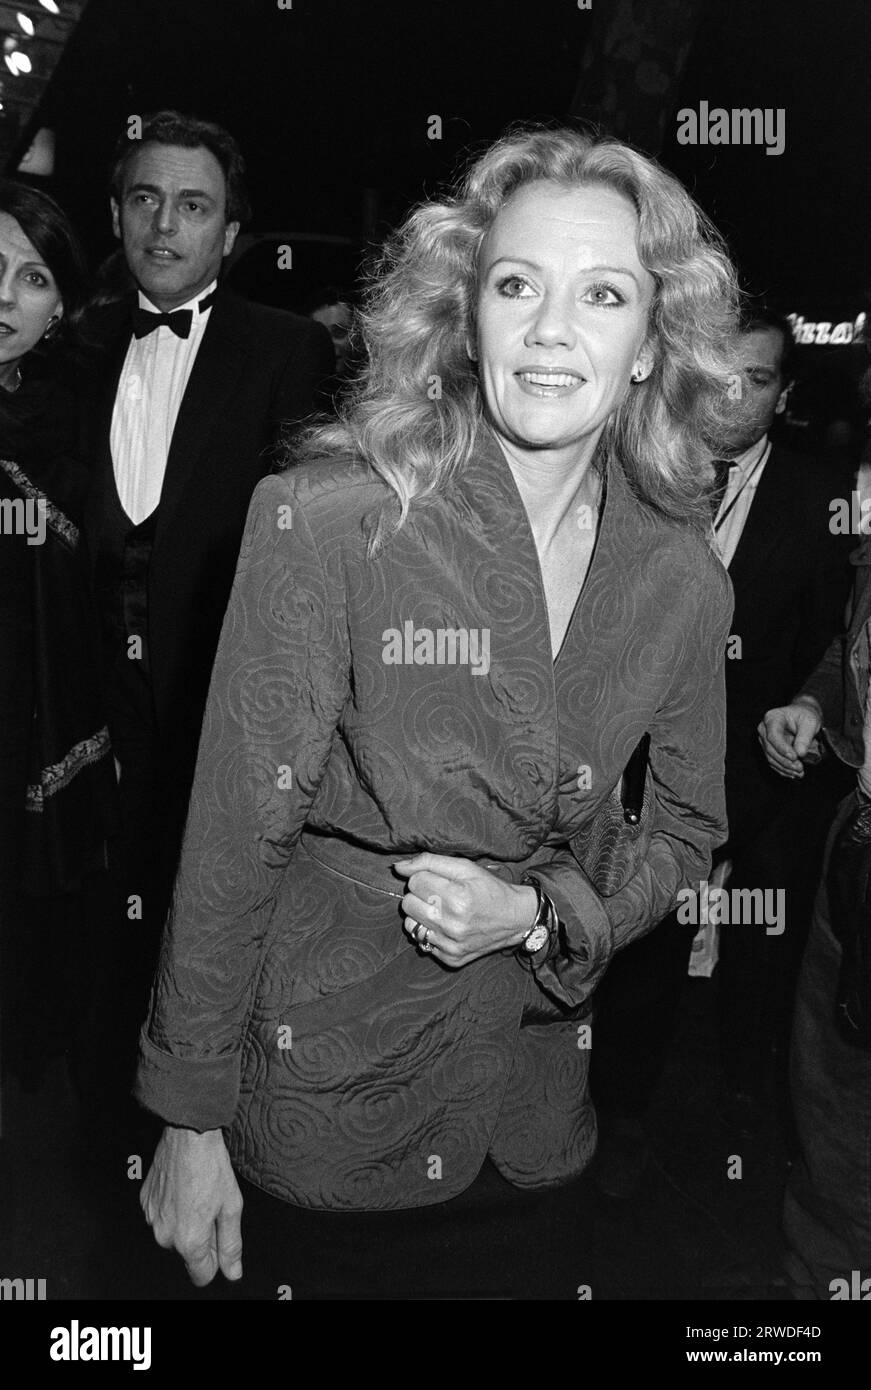 LONDRA, REGNO UNITO. 8 ottobre 1986: Attrice Hayley Mills alla prima notte di "The Petition" al Wyndhams Theatre di Londra. Foto del file © Paul Smith/Featureflash Foto Stock